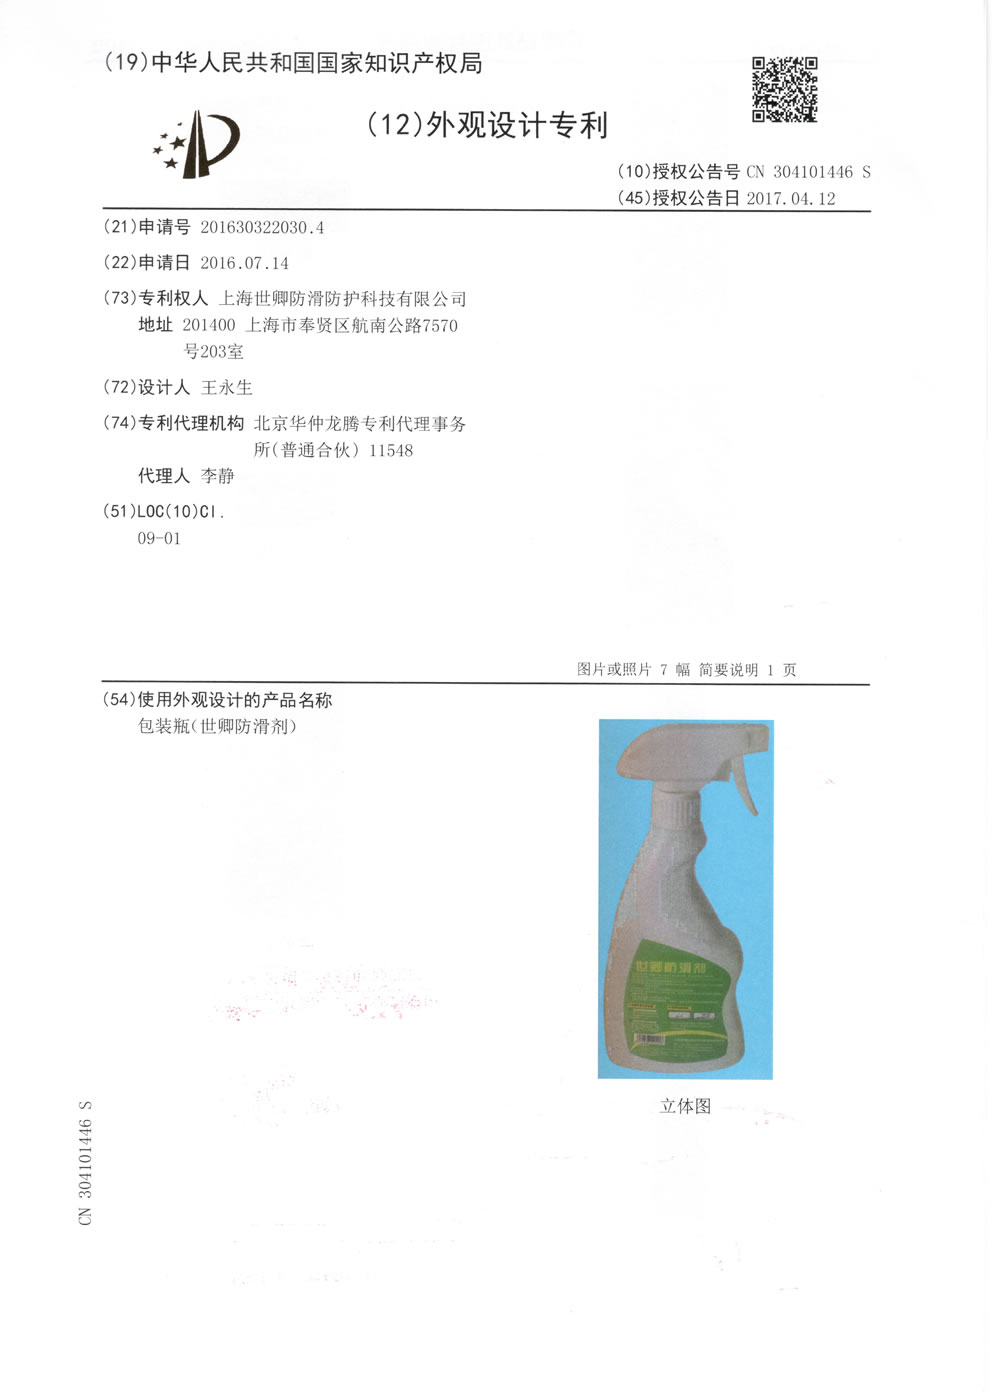 上海我司防滑液发明专利审查合格证书